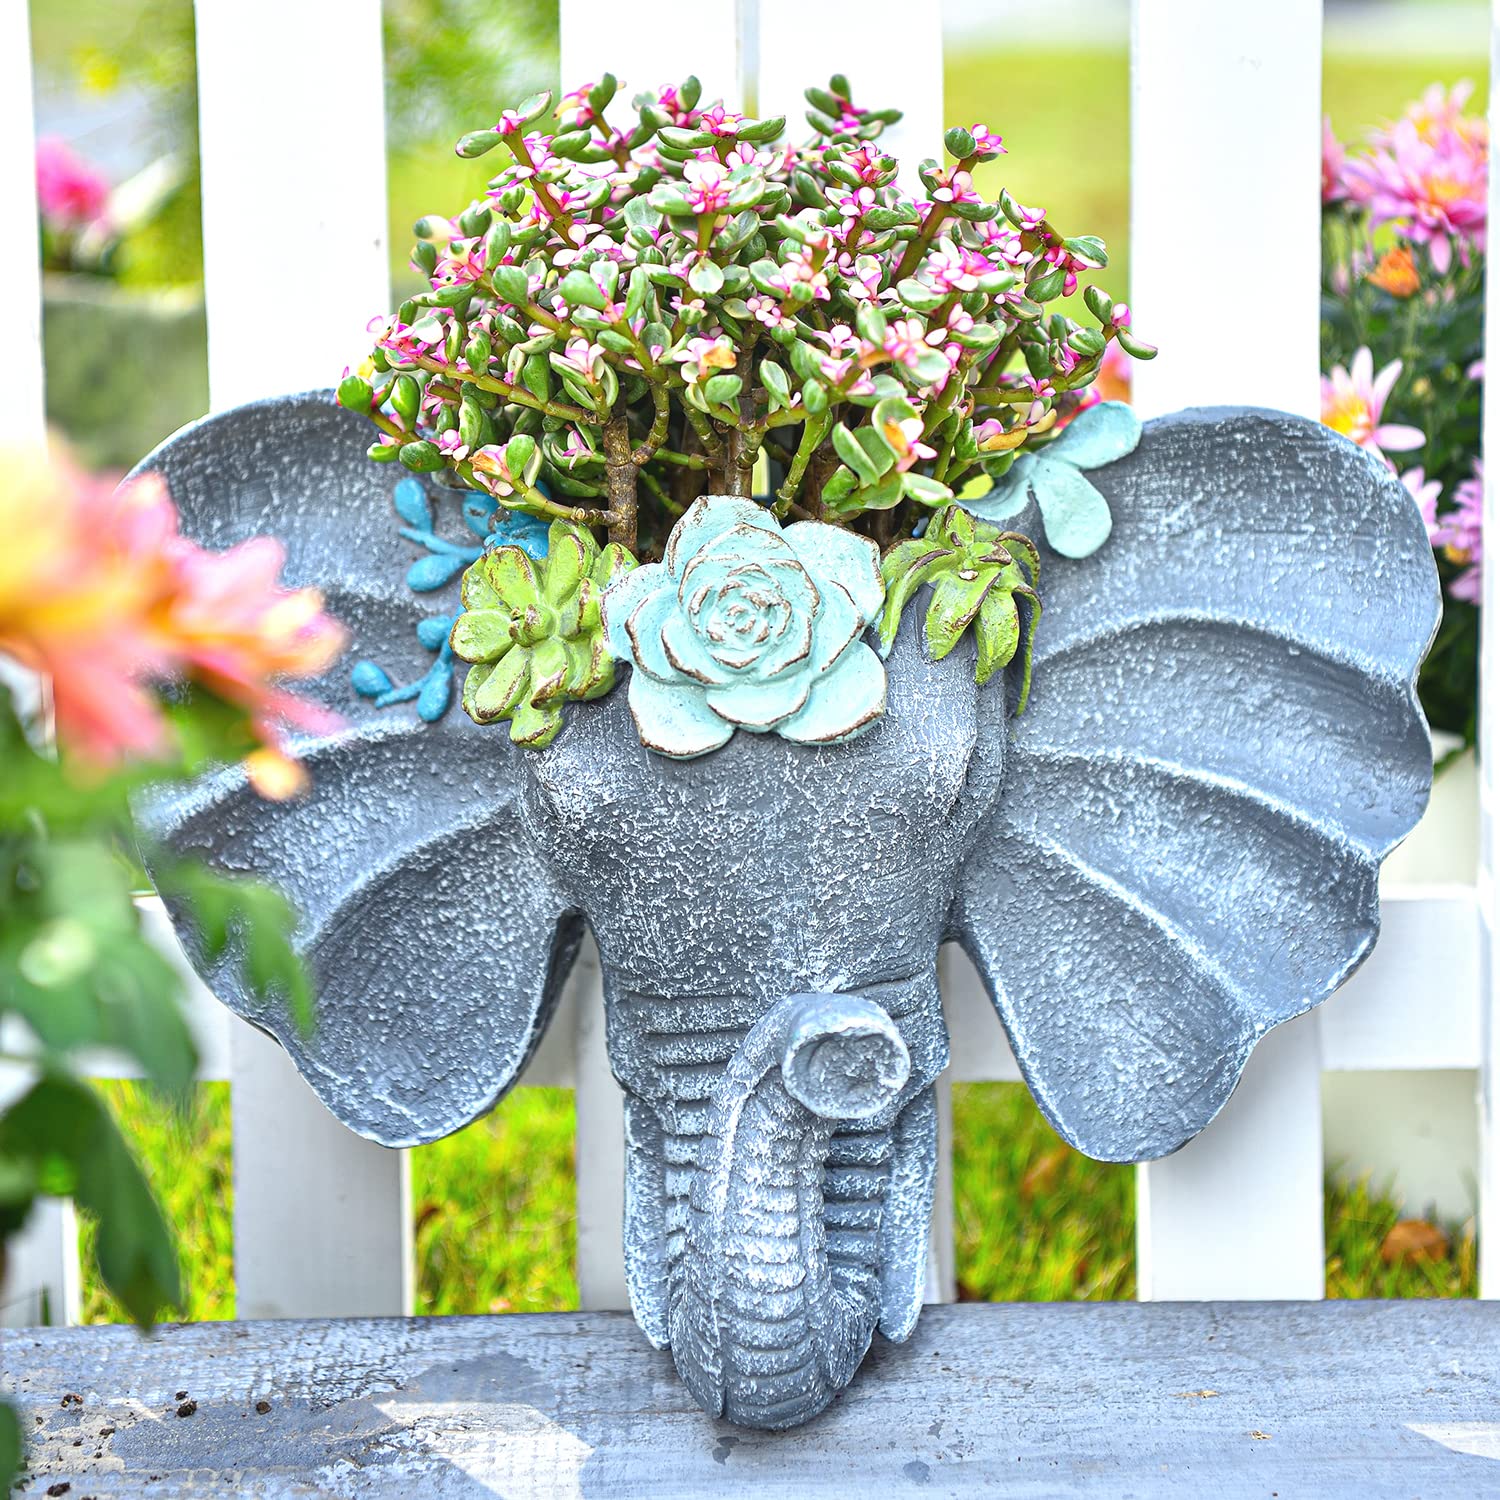 Sungmor Elephant Head Shaped Wandbehang Pflanzgefäß, Blumenpflanzentopf - Harz & Handbemalt & Grau - Skulptur Garten Wanddekoration im Freien, Pflanzenbehälter